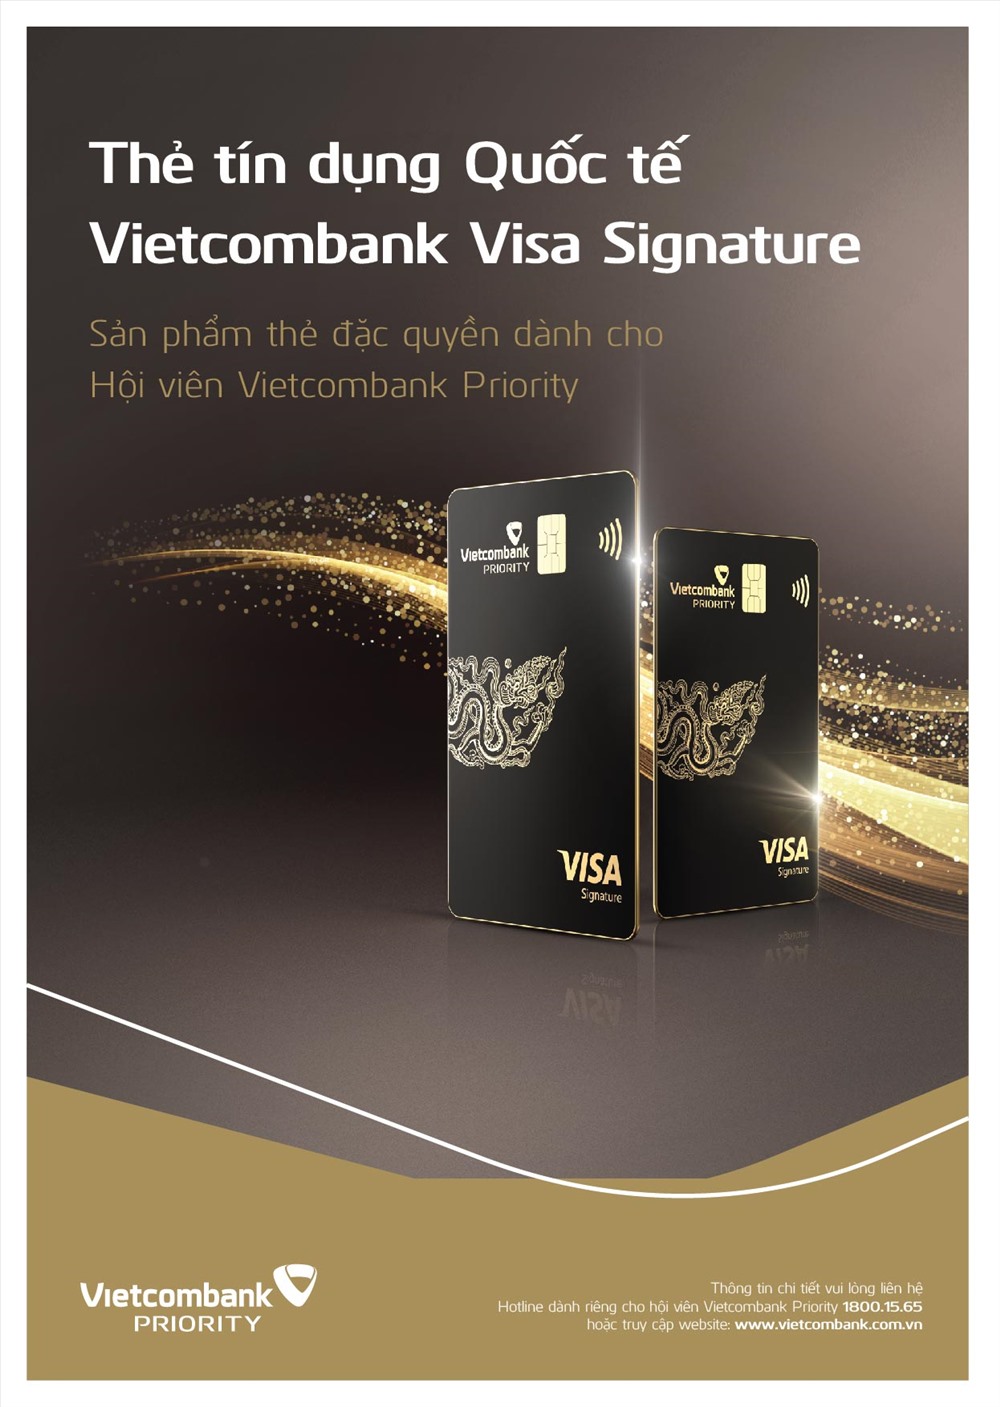 Thẻ Vietcombank Visa Signature là gì?